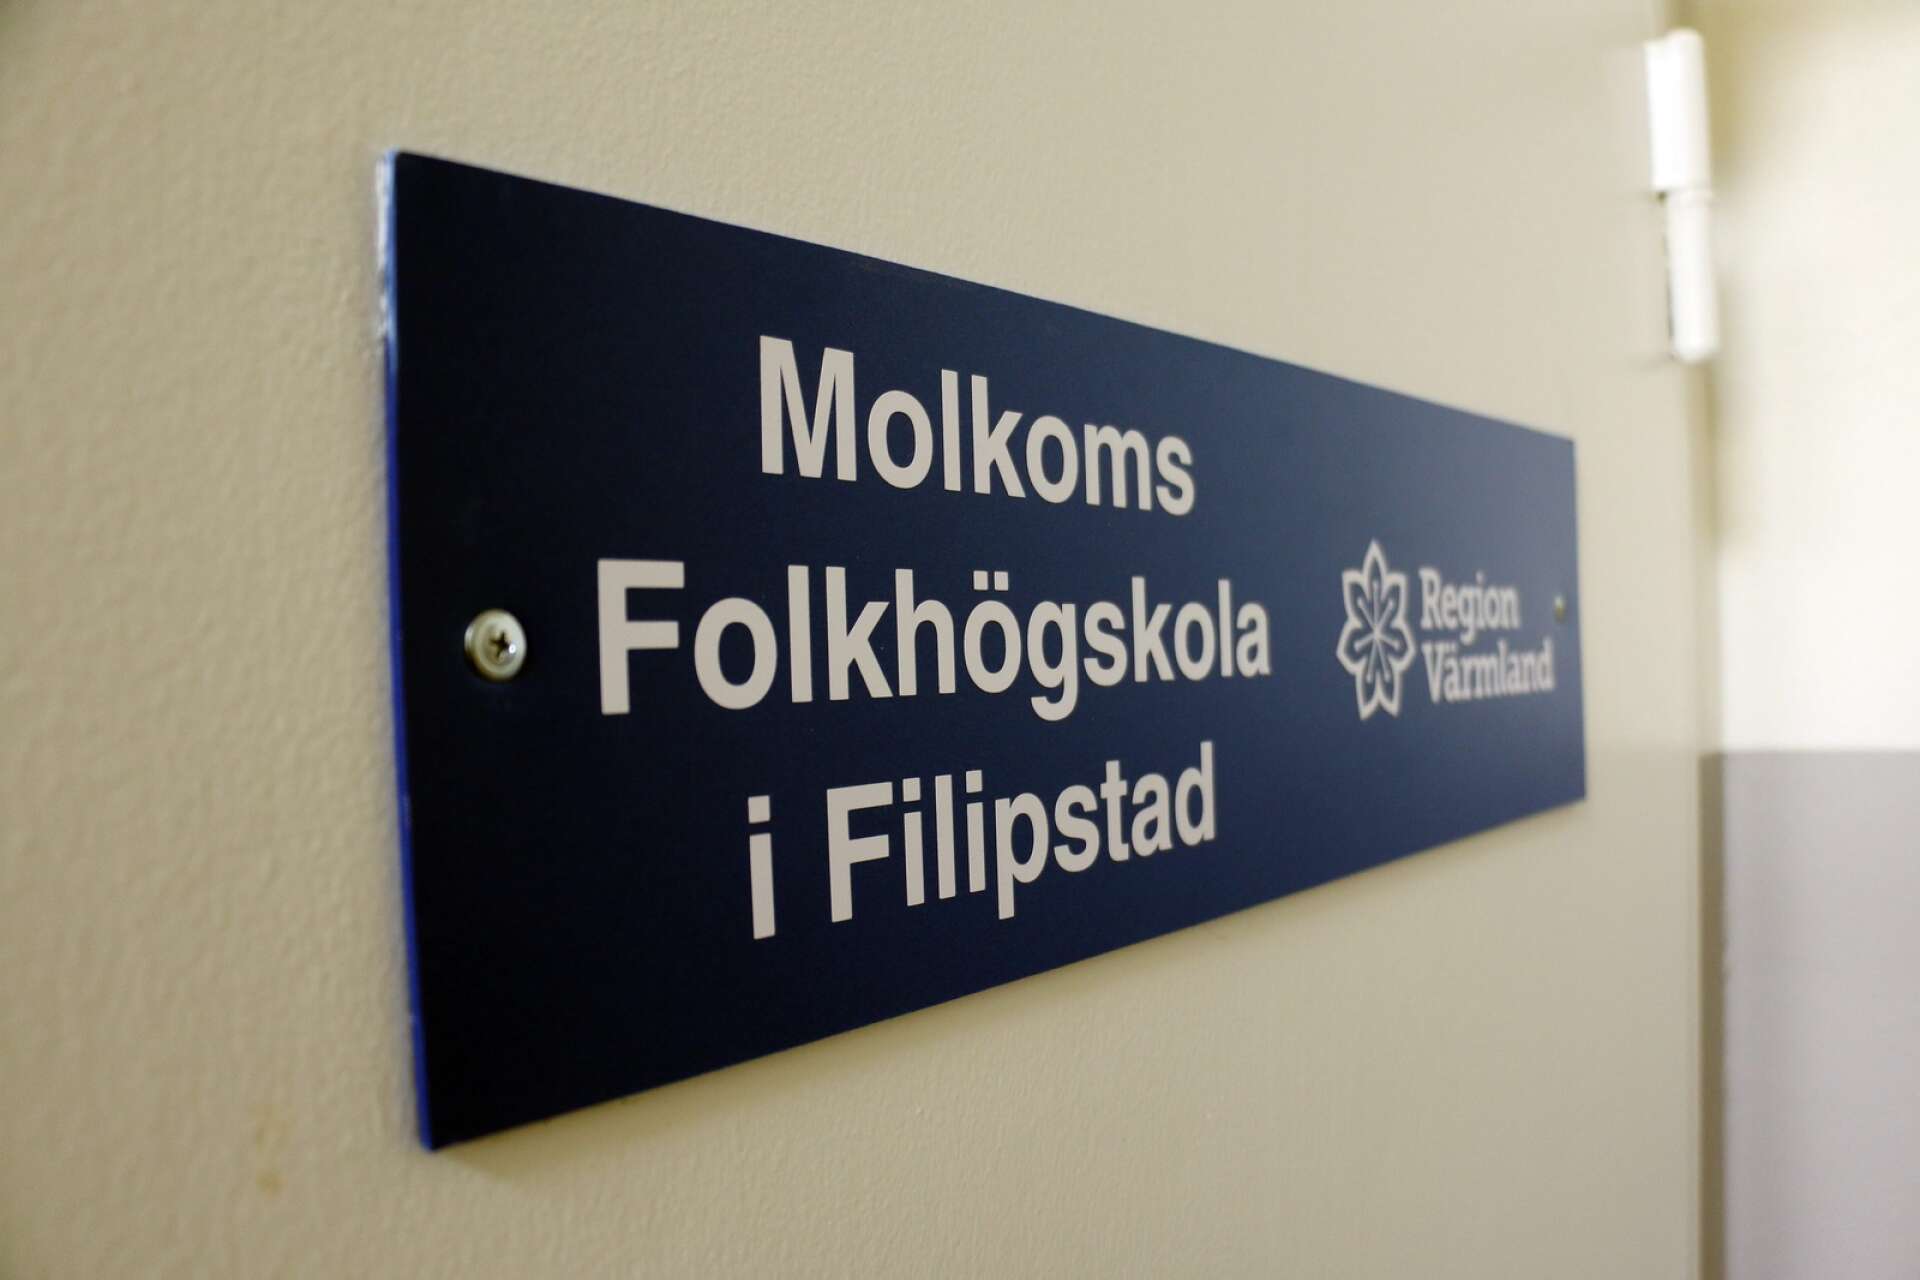 Folkhögskolorna i Molkom, Klarälvdalen och Kristinehamn samarbetar i verksamheten i Filipstad som startade hösten 2019, skriver Elisabeth Kihlström med flera.